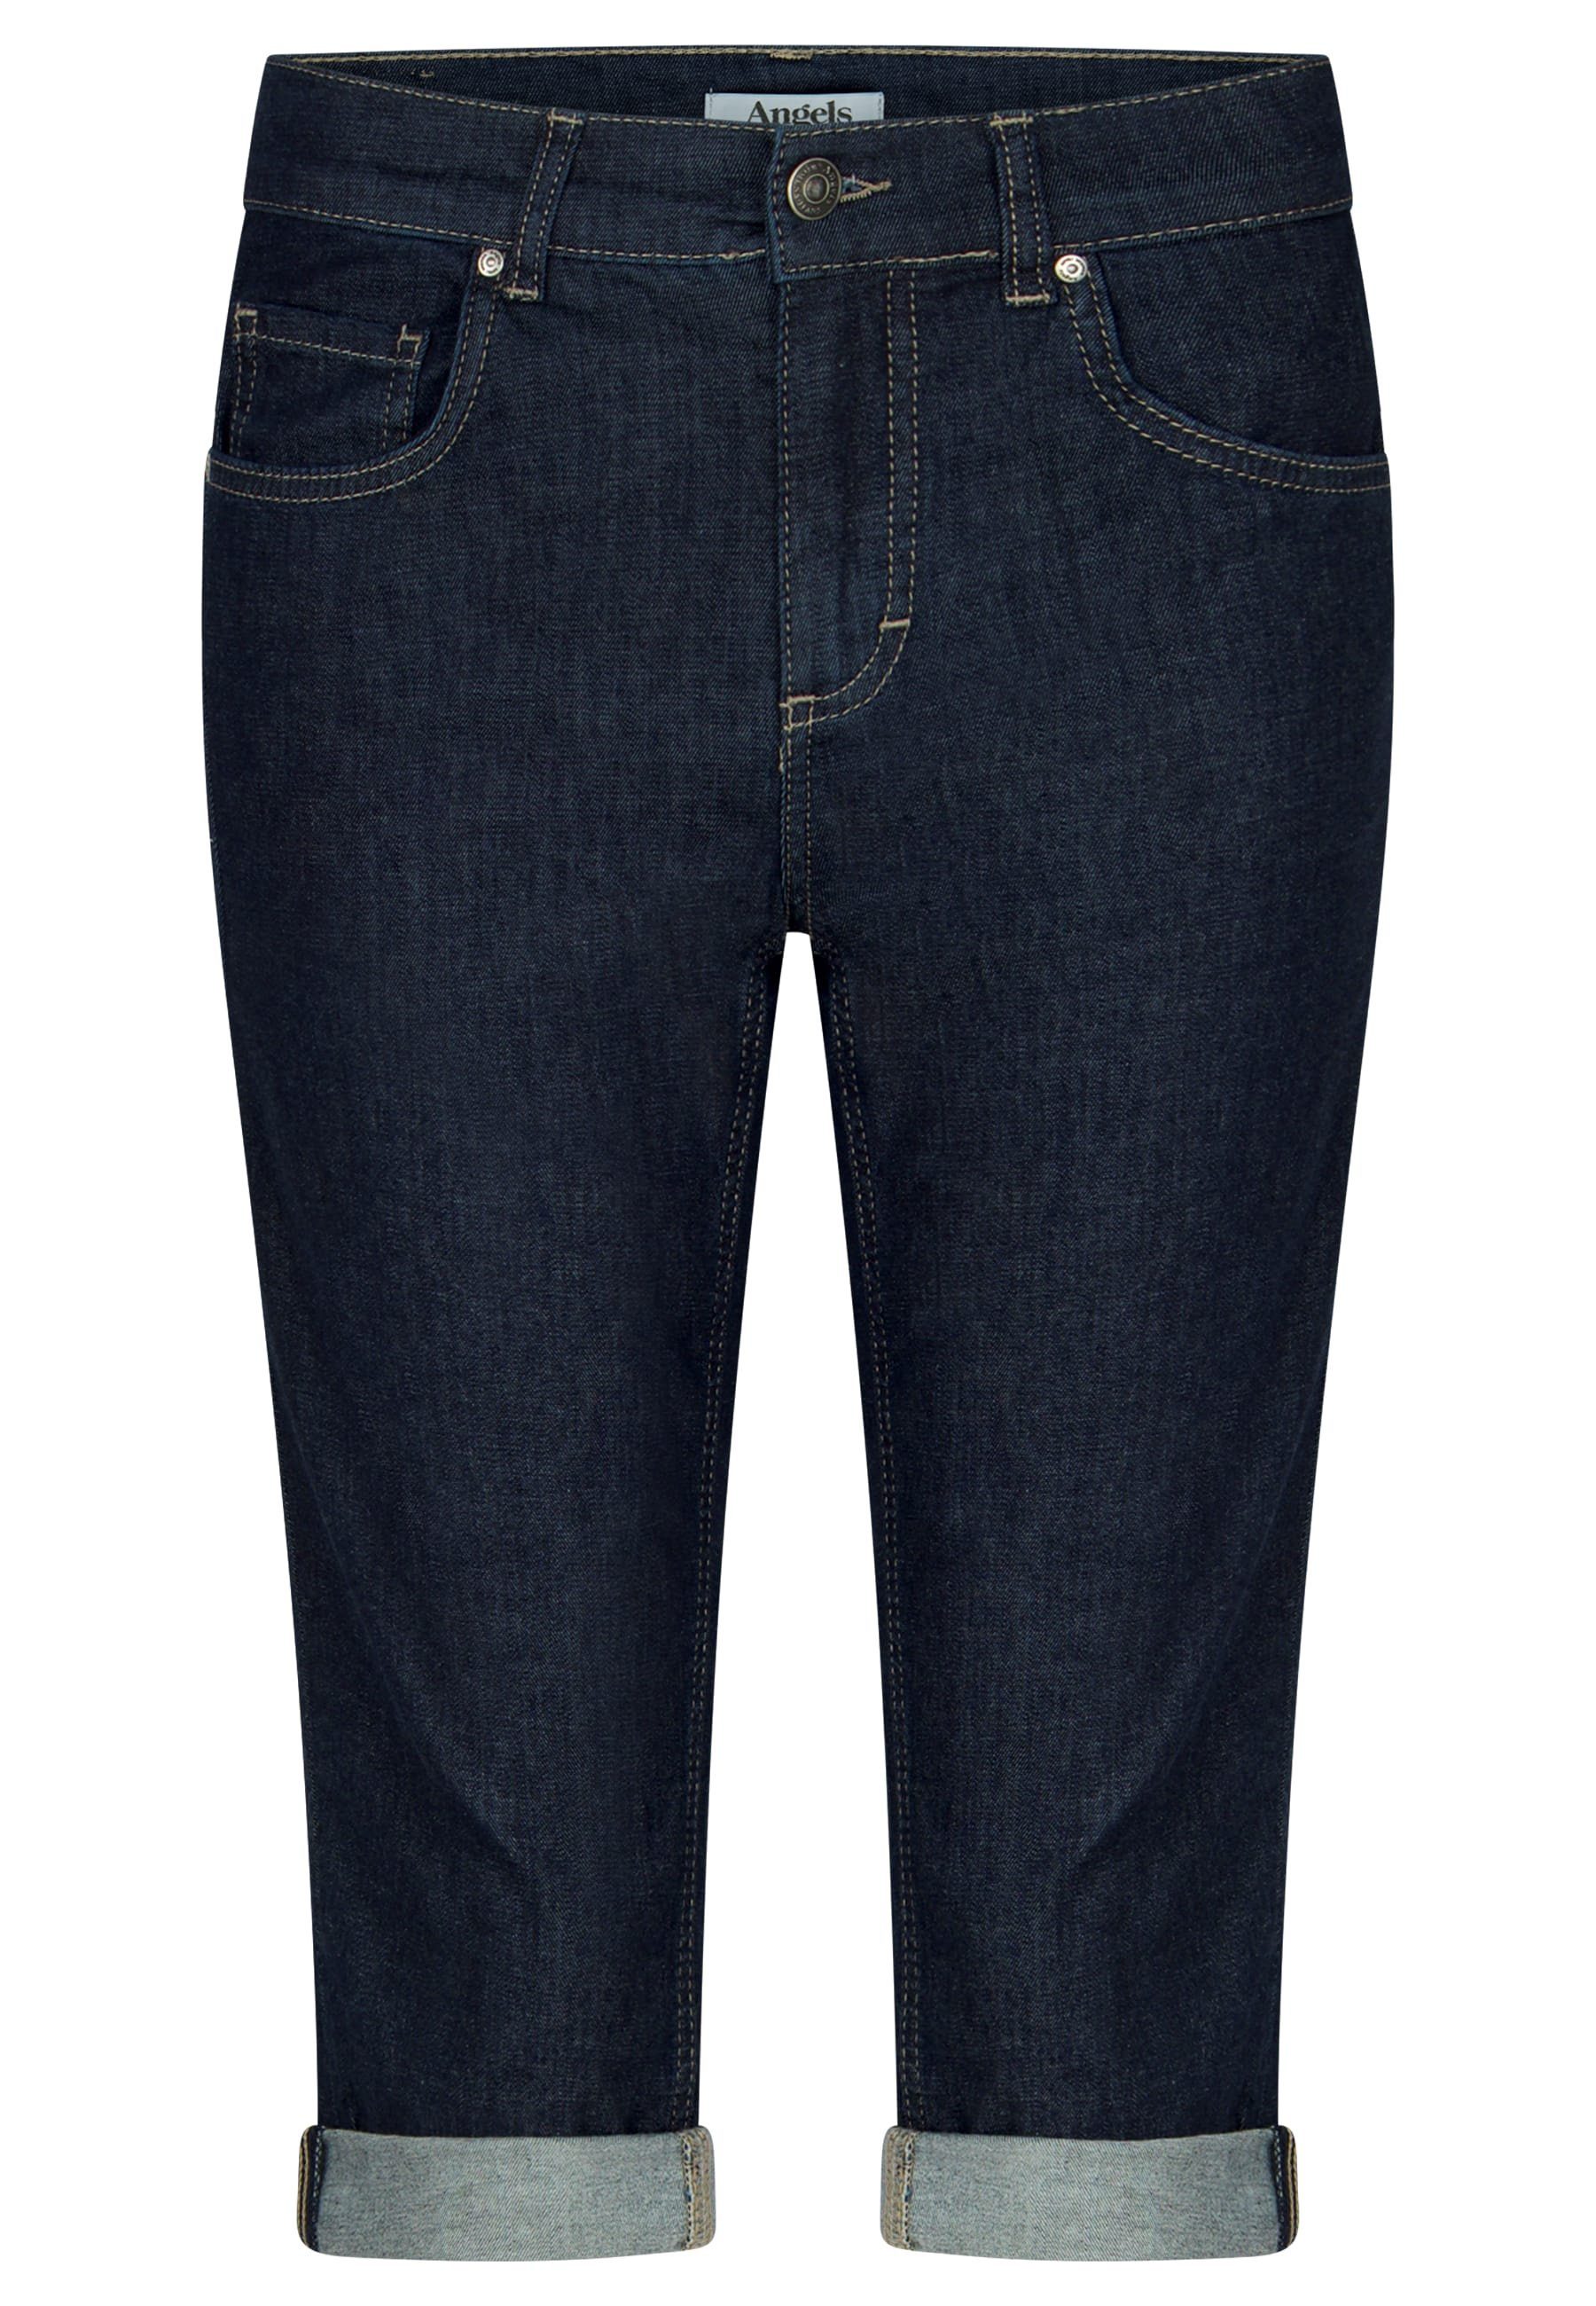 5-Pocket-Jeans mit Capri ANGELS Used-Look TU Jeans Label-Applikationen blau mit